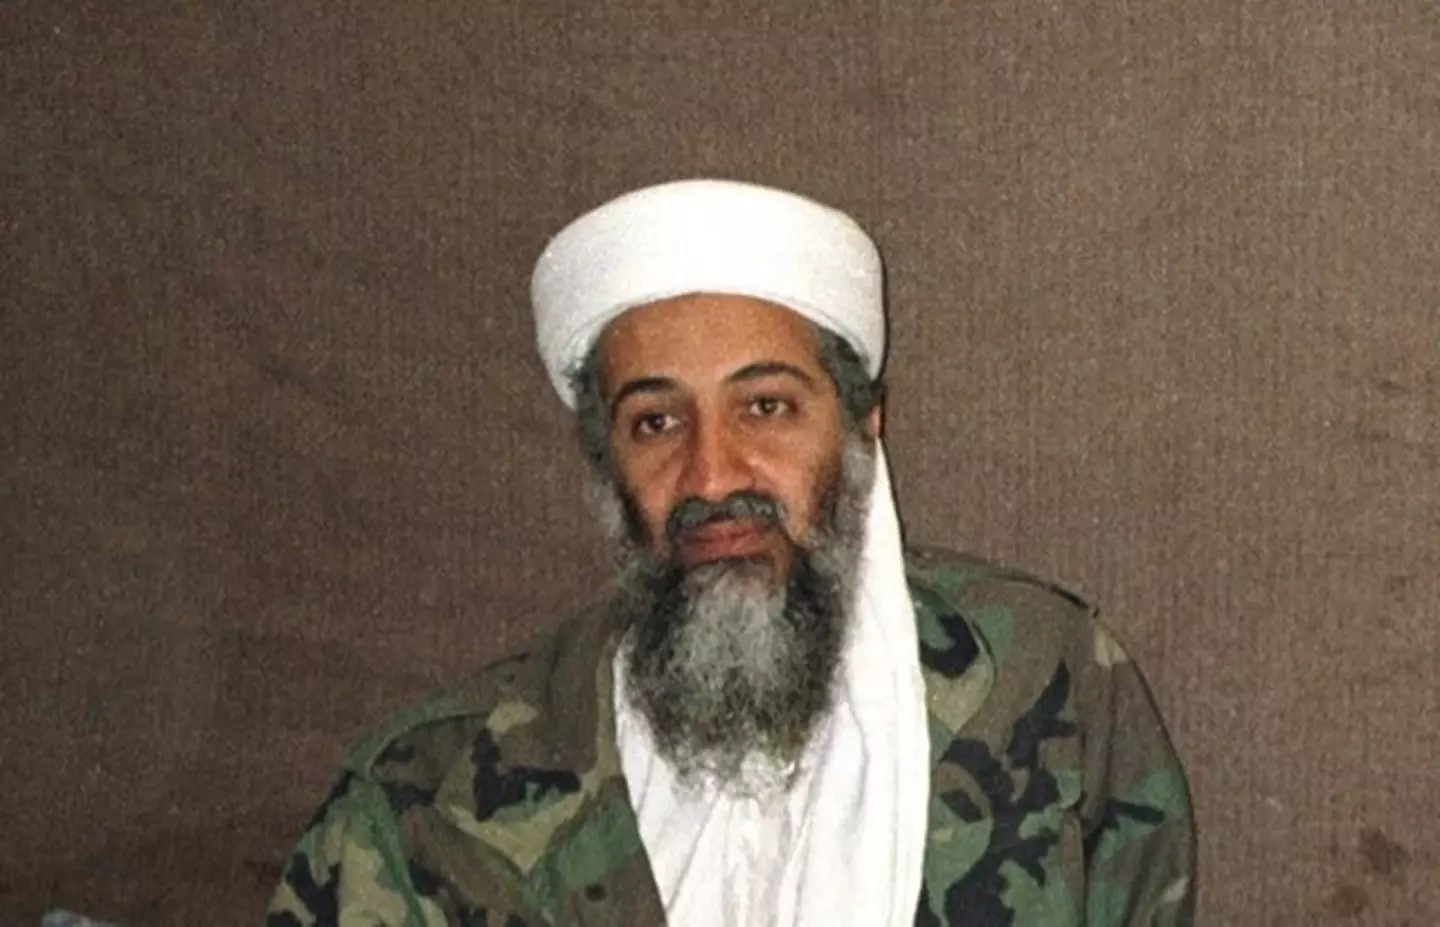 Osama bin Laden was killed in 2011.